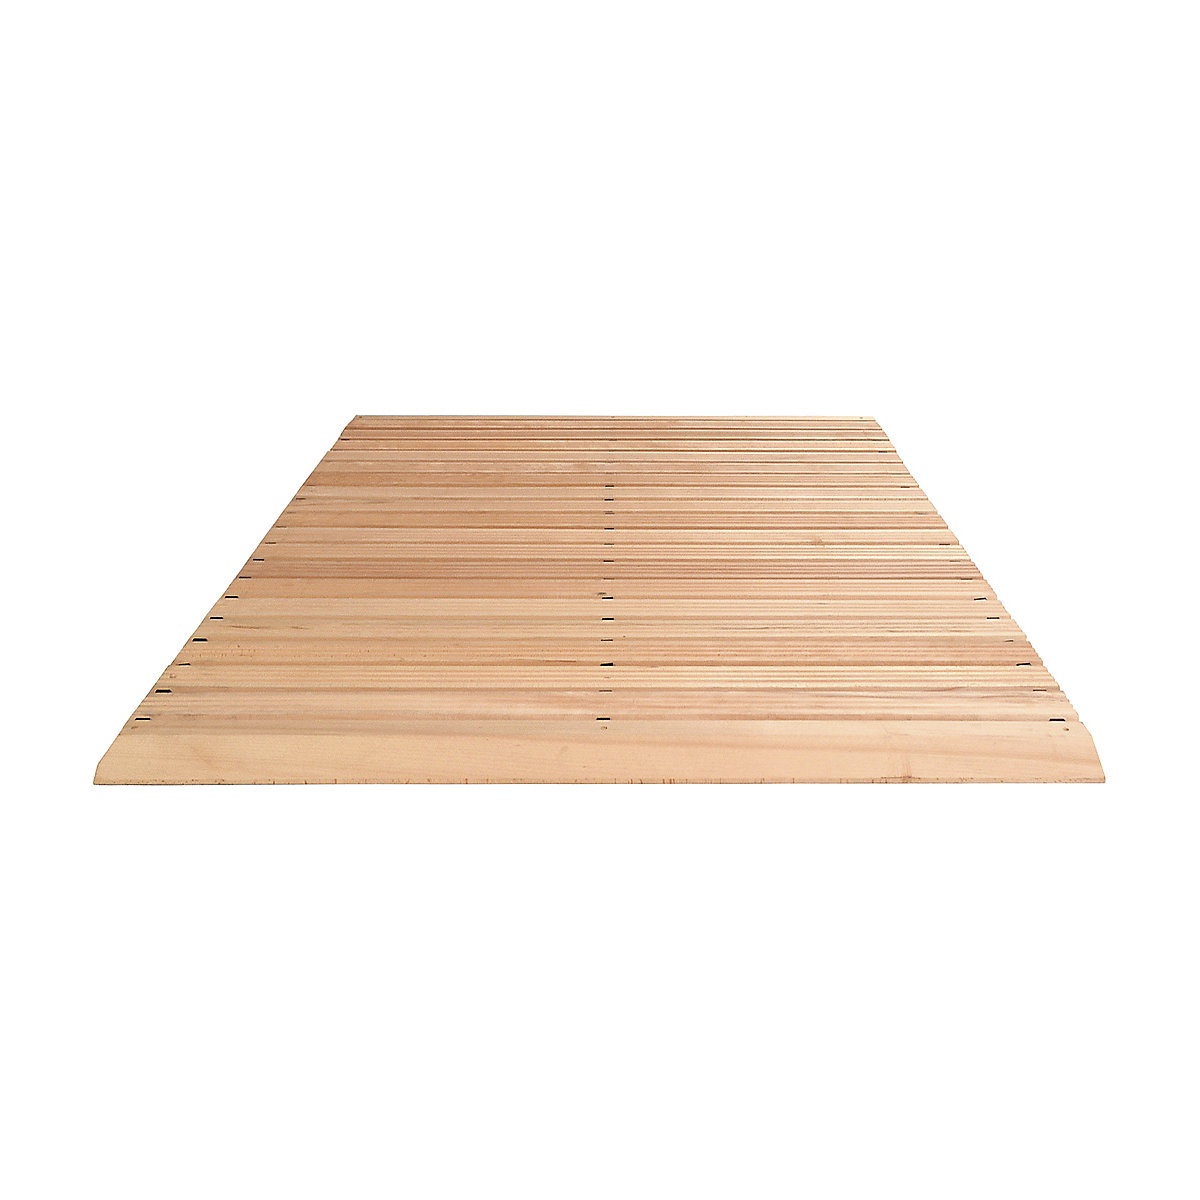 Holzlaufrost, pro lfd. m, mit Anschrägung an 3 Seiten, Breite 1200 mm